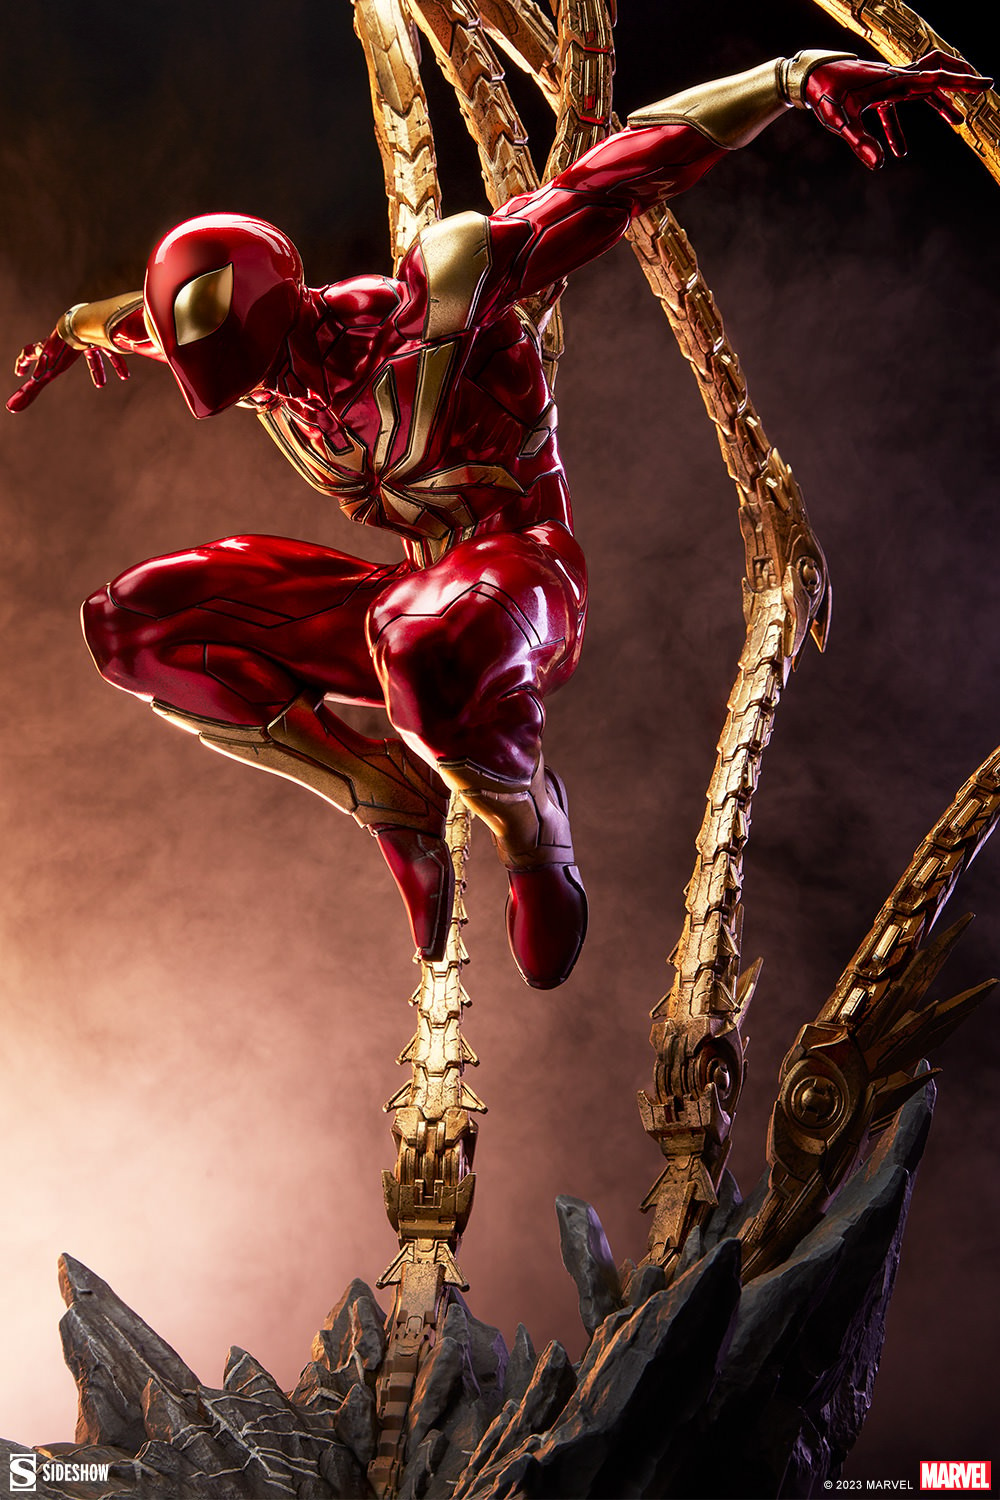 Marvel - Figurine Movie Collection 1/16 Iron Spider (Spider-Man) 14 cm -  Figurine-Discount